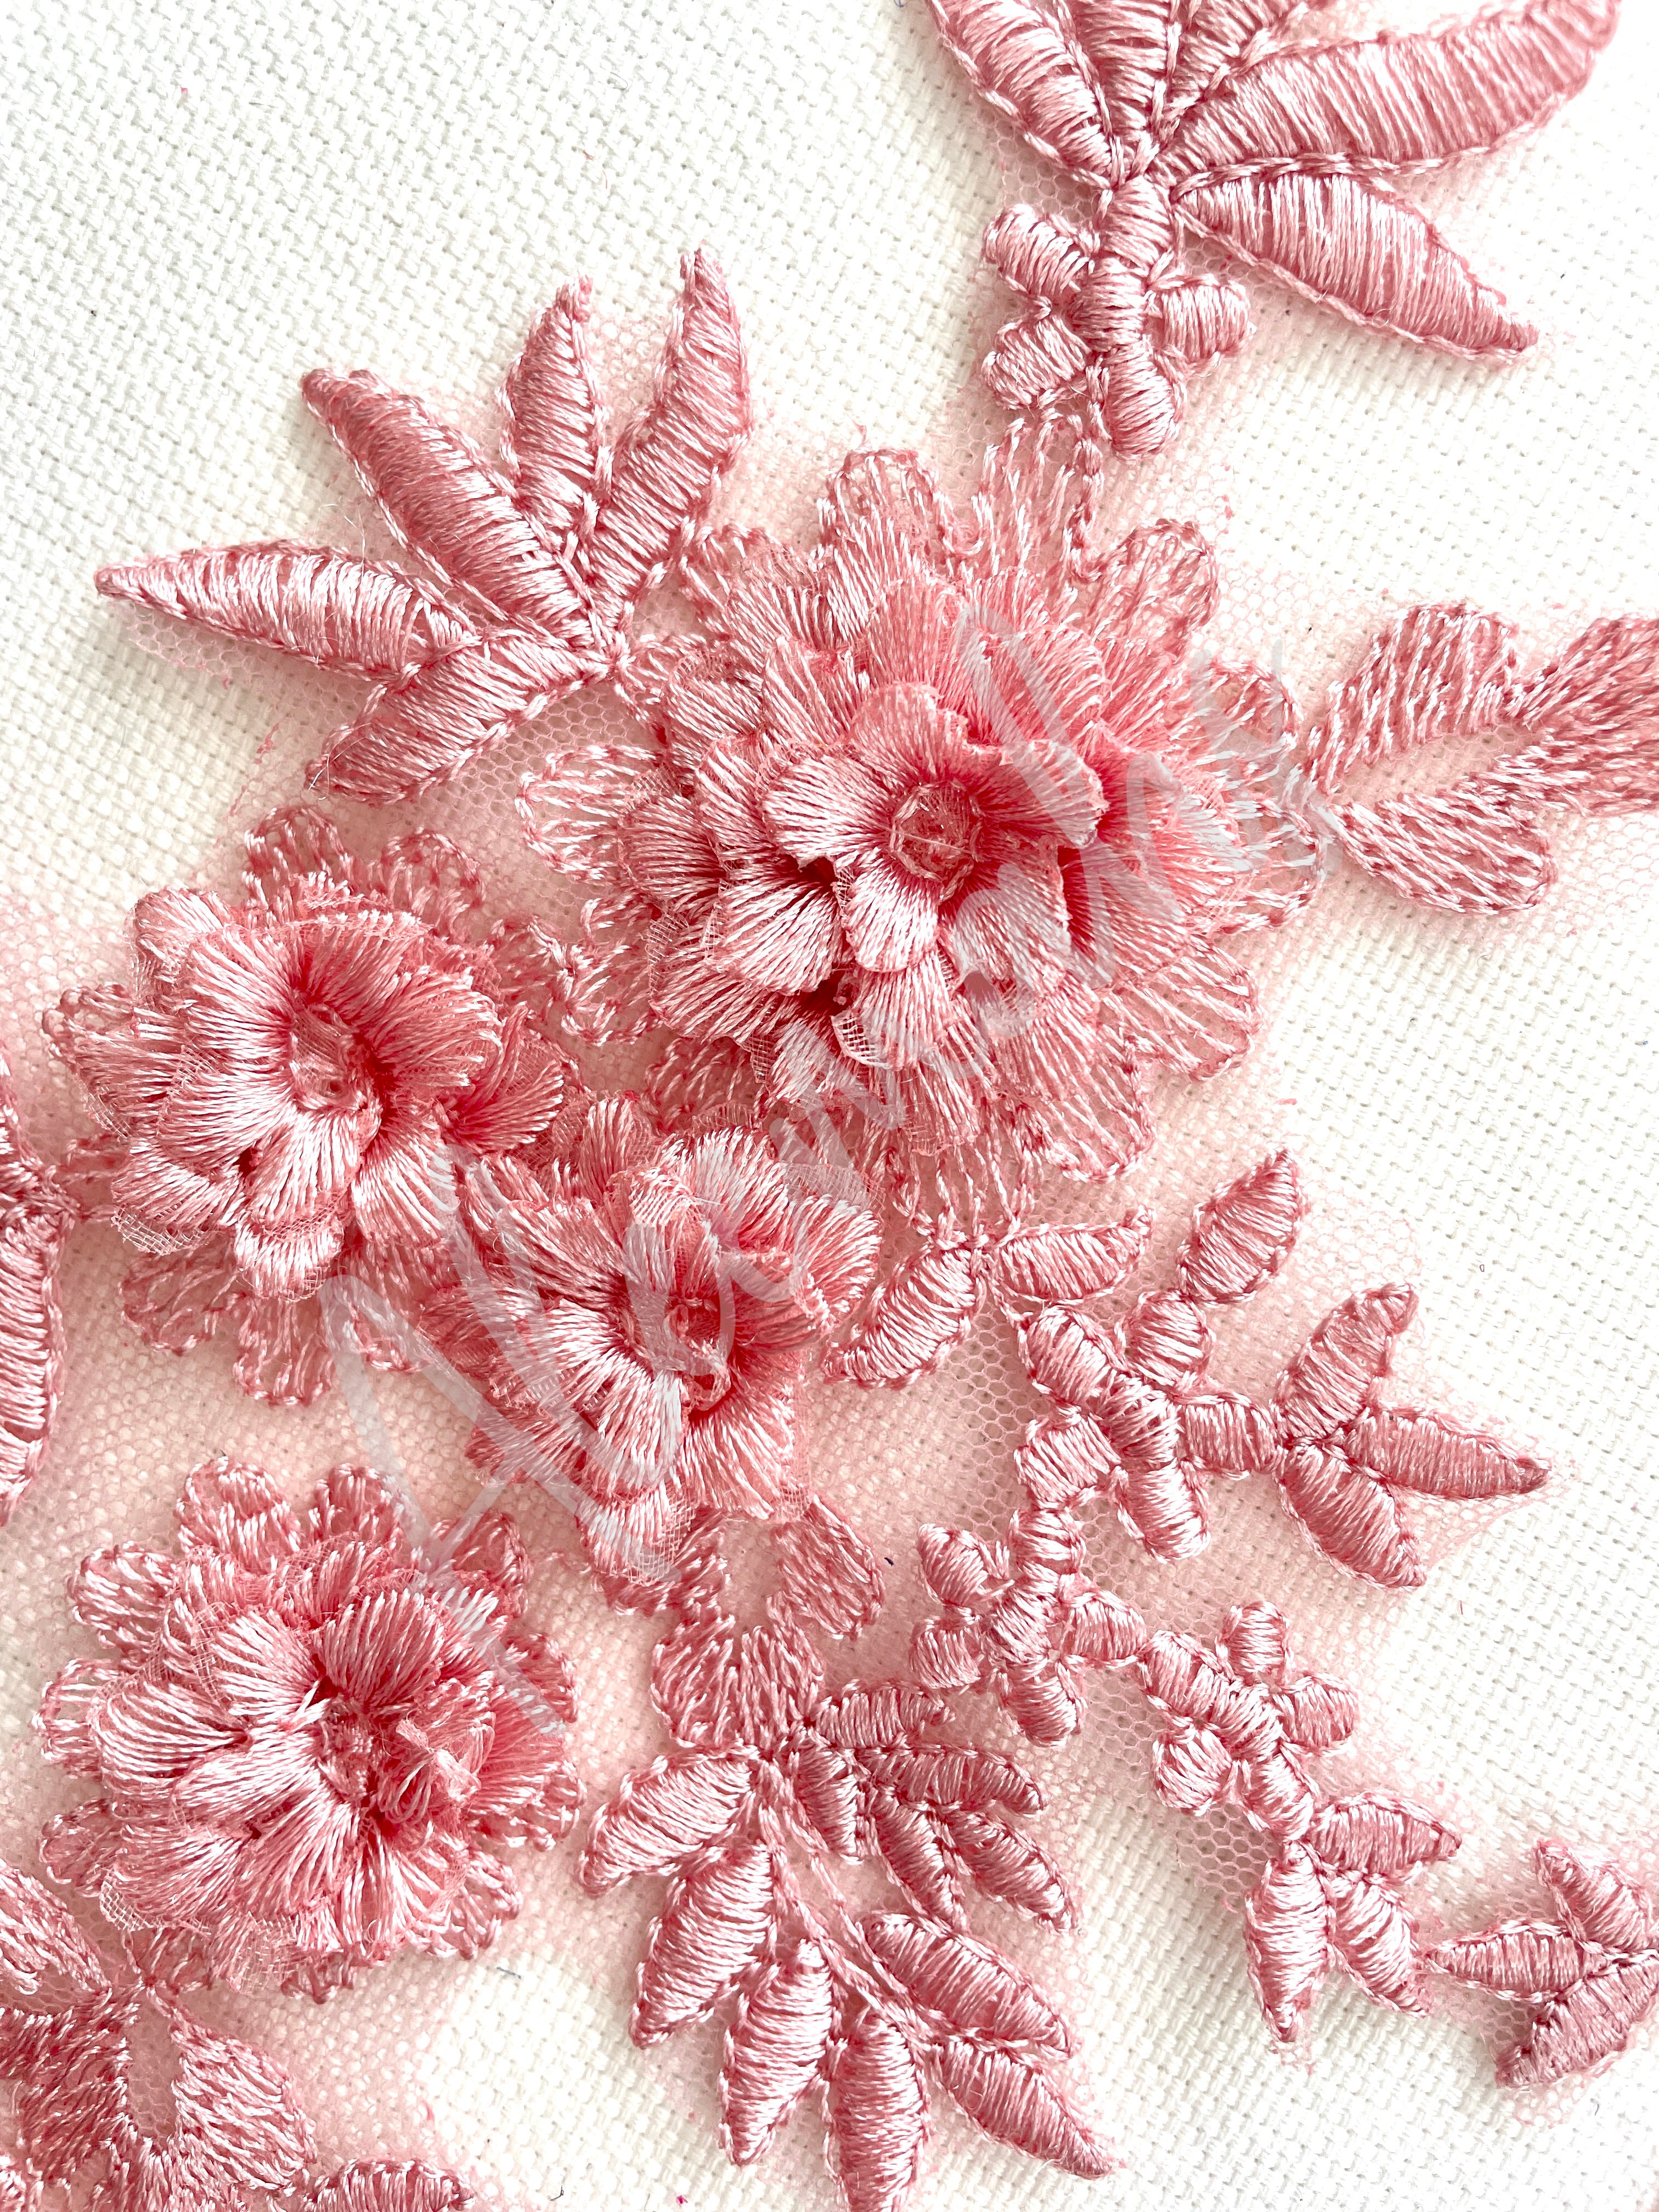 LA-033: 3D floral lace applique pair: Dusty Pink – Aleemahs